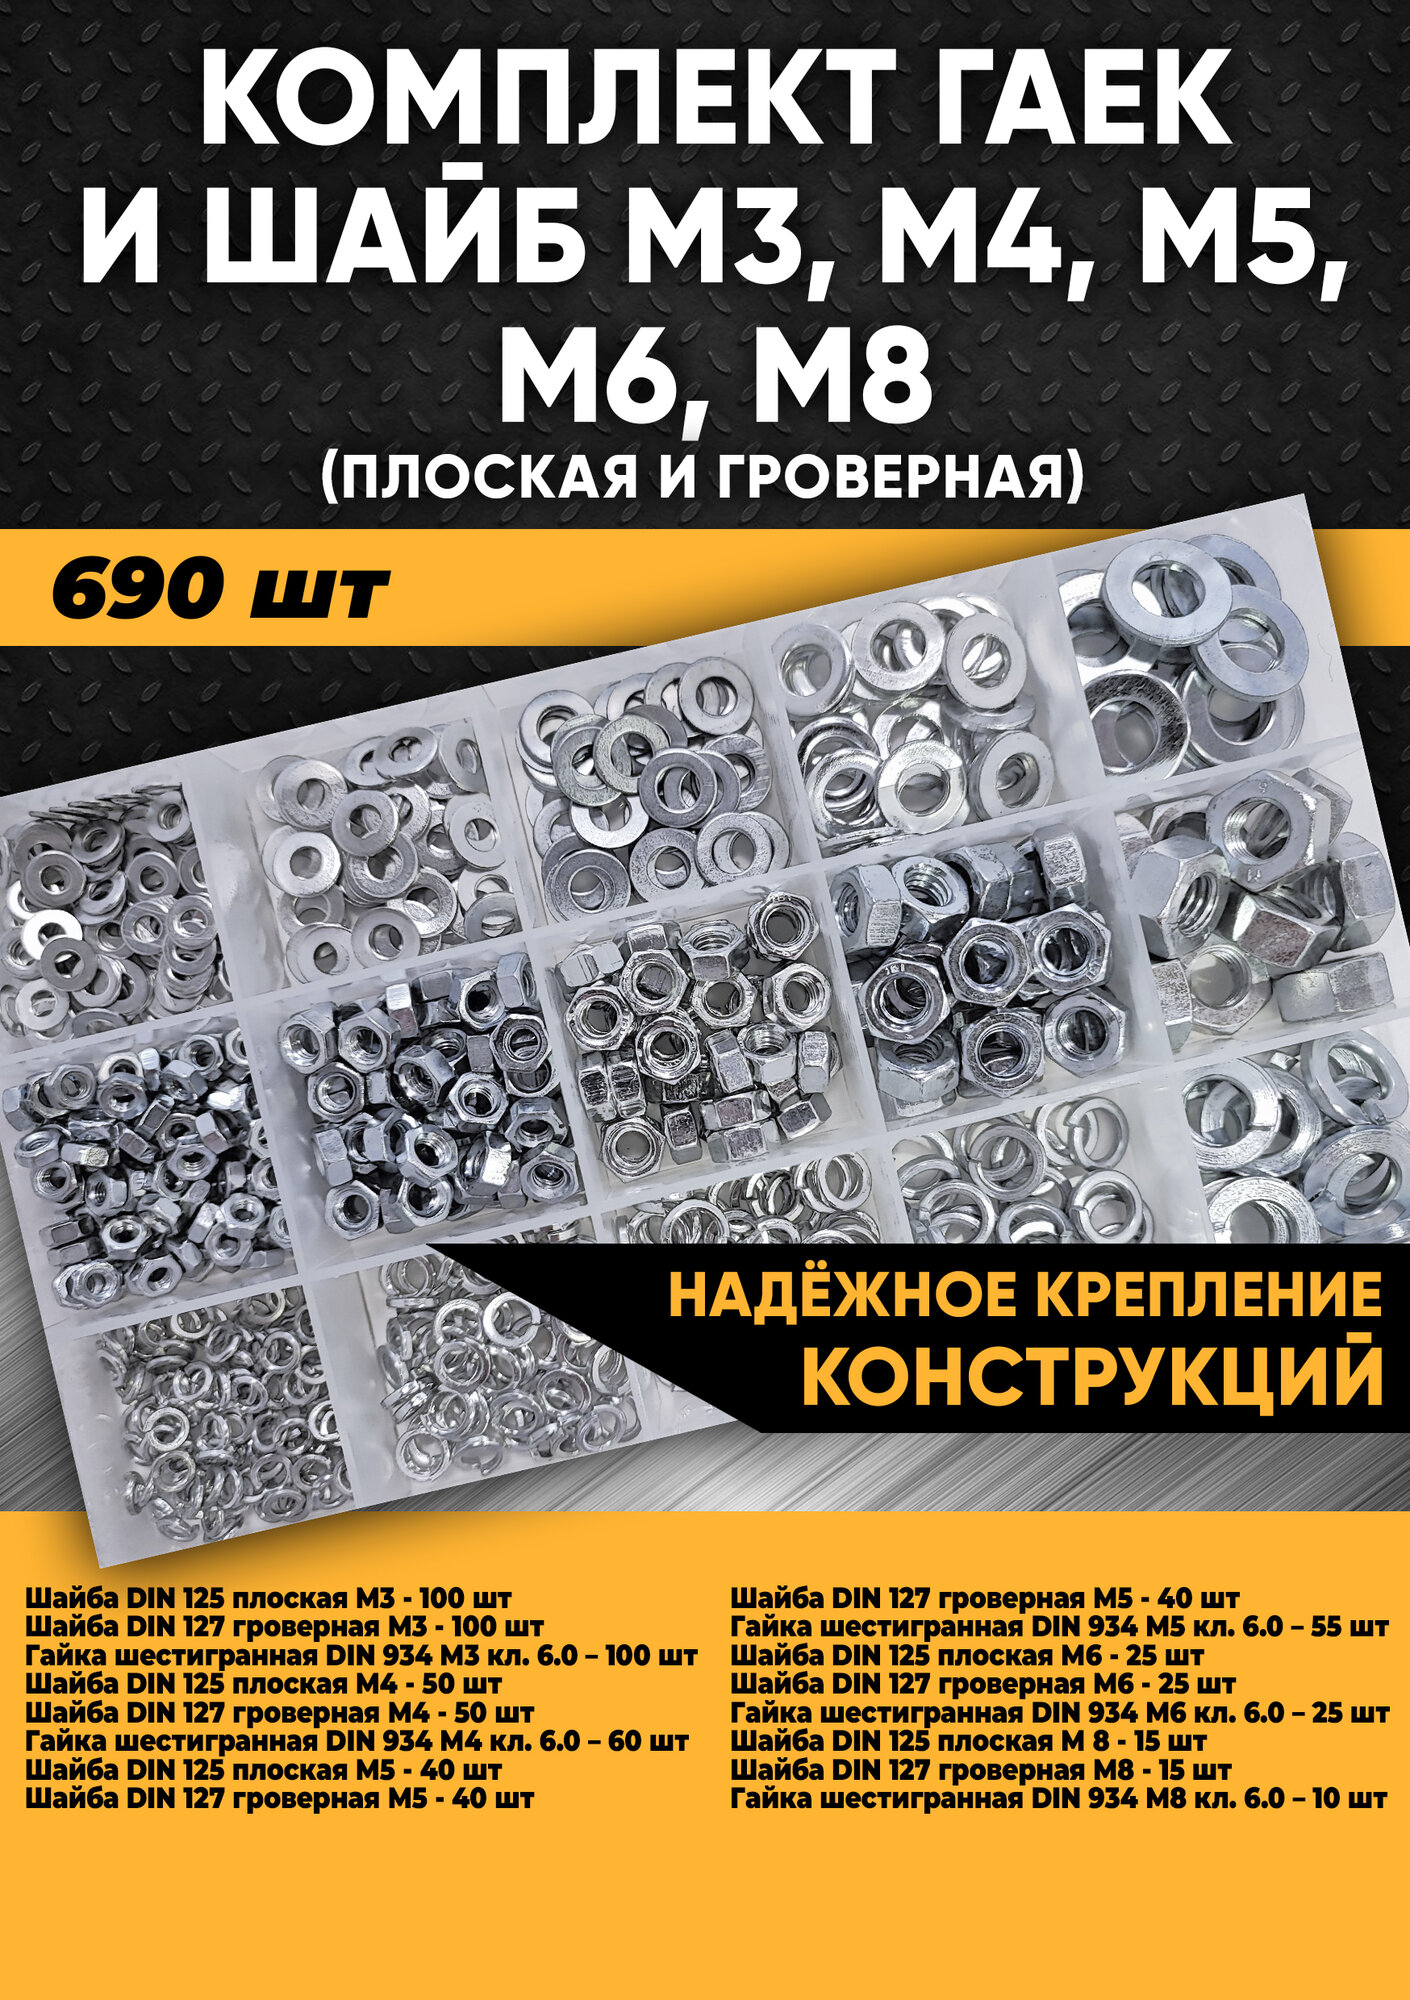 Комплект гаек и шайб М3, М4, М5, М6, М8 (плоская и гроверная) - 690 шт. в органайзере